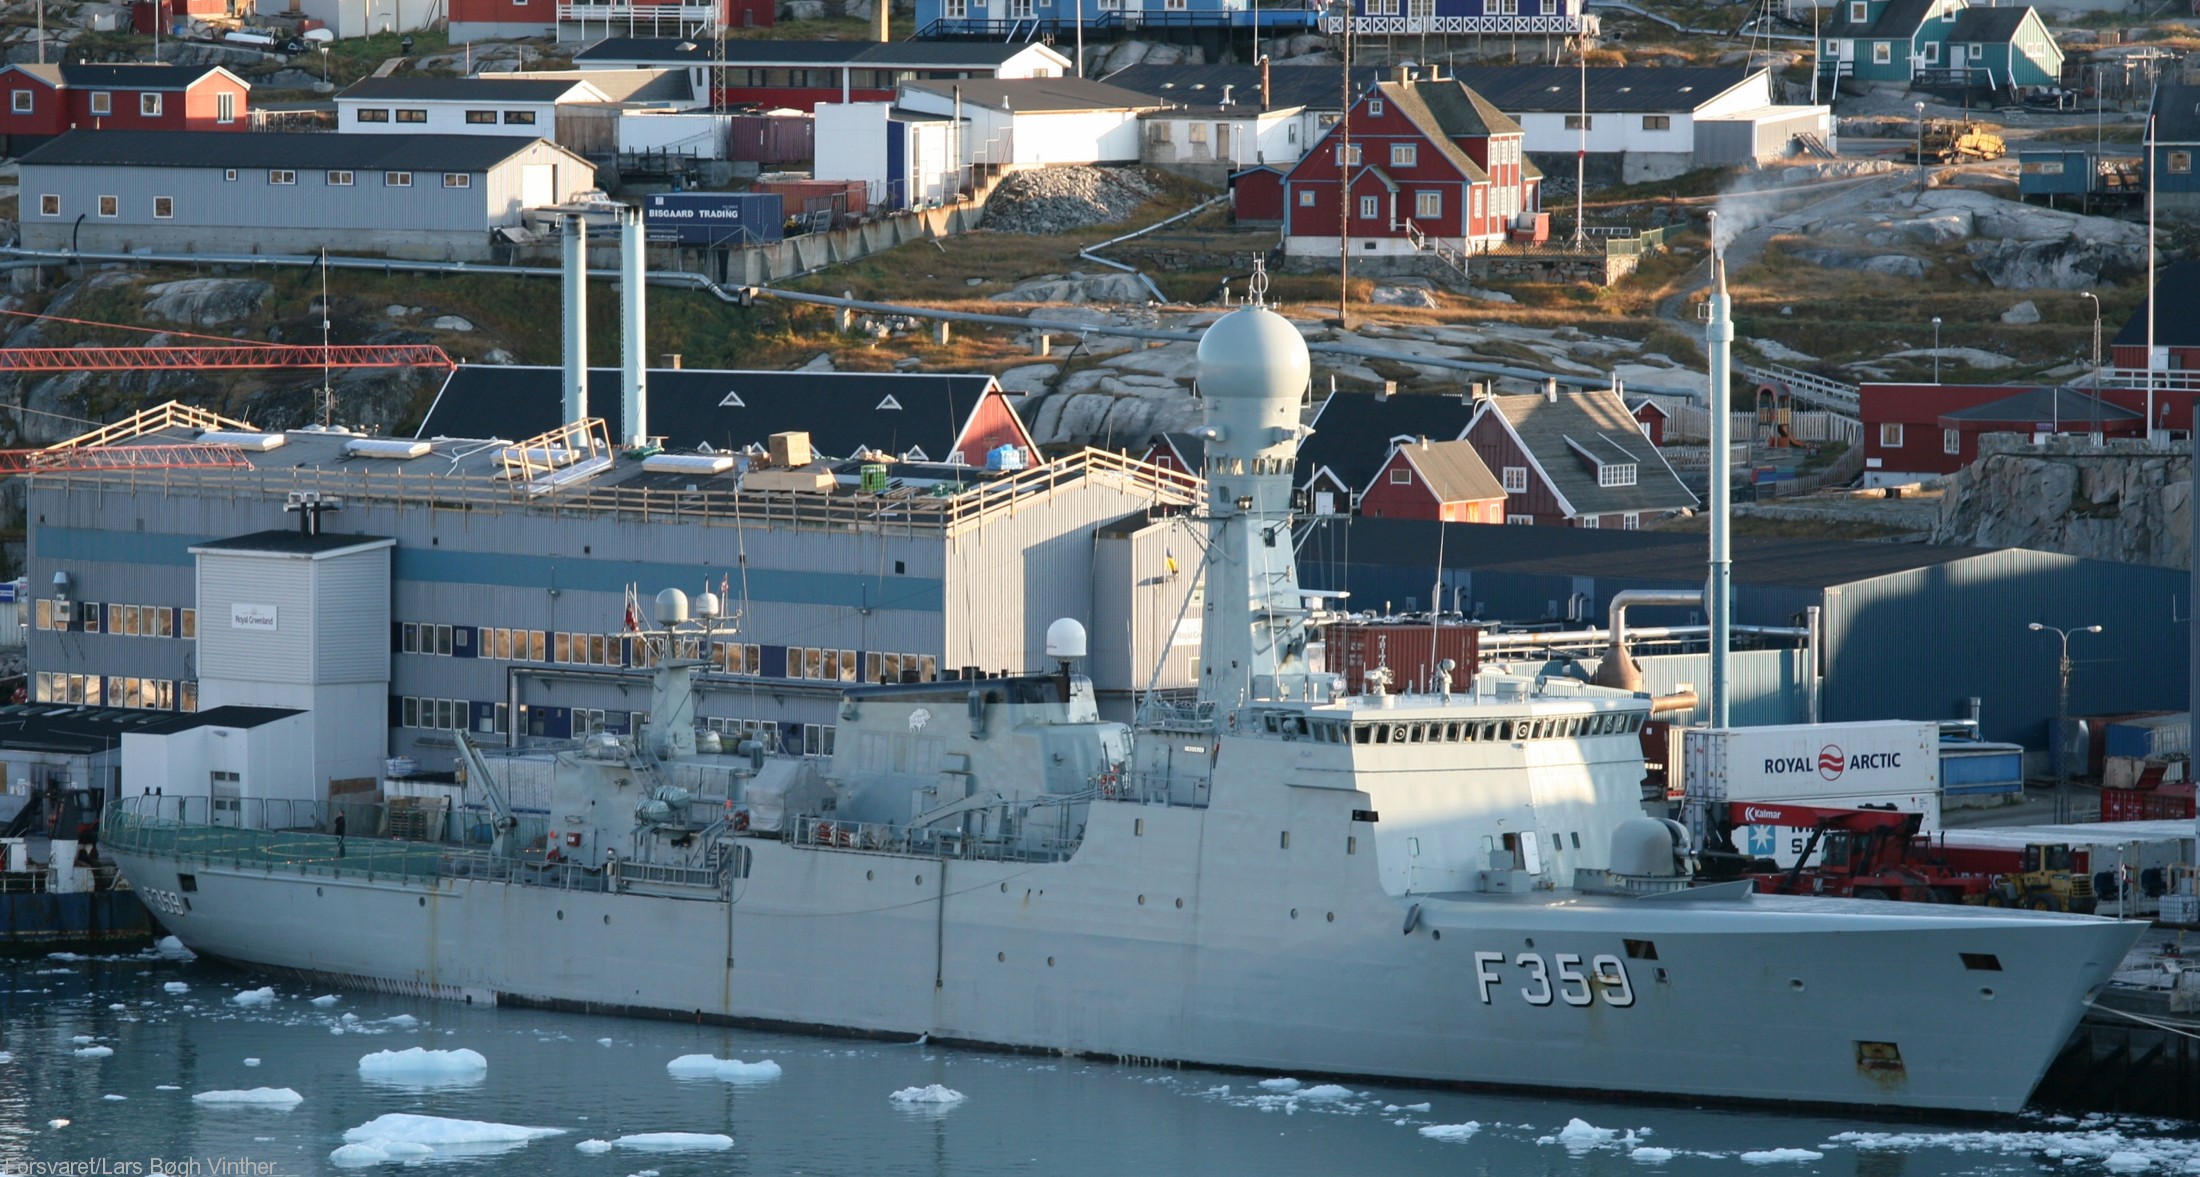 f-359 hdms vaedderen thetis class ocean patrol frigate royal danish navy kongelige danske marine kdm inspektionsskibet 26